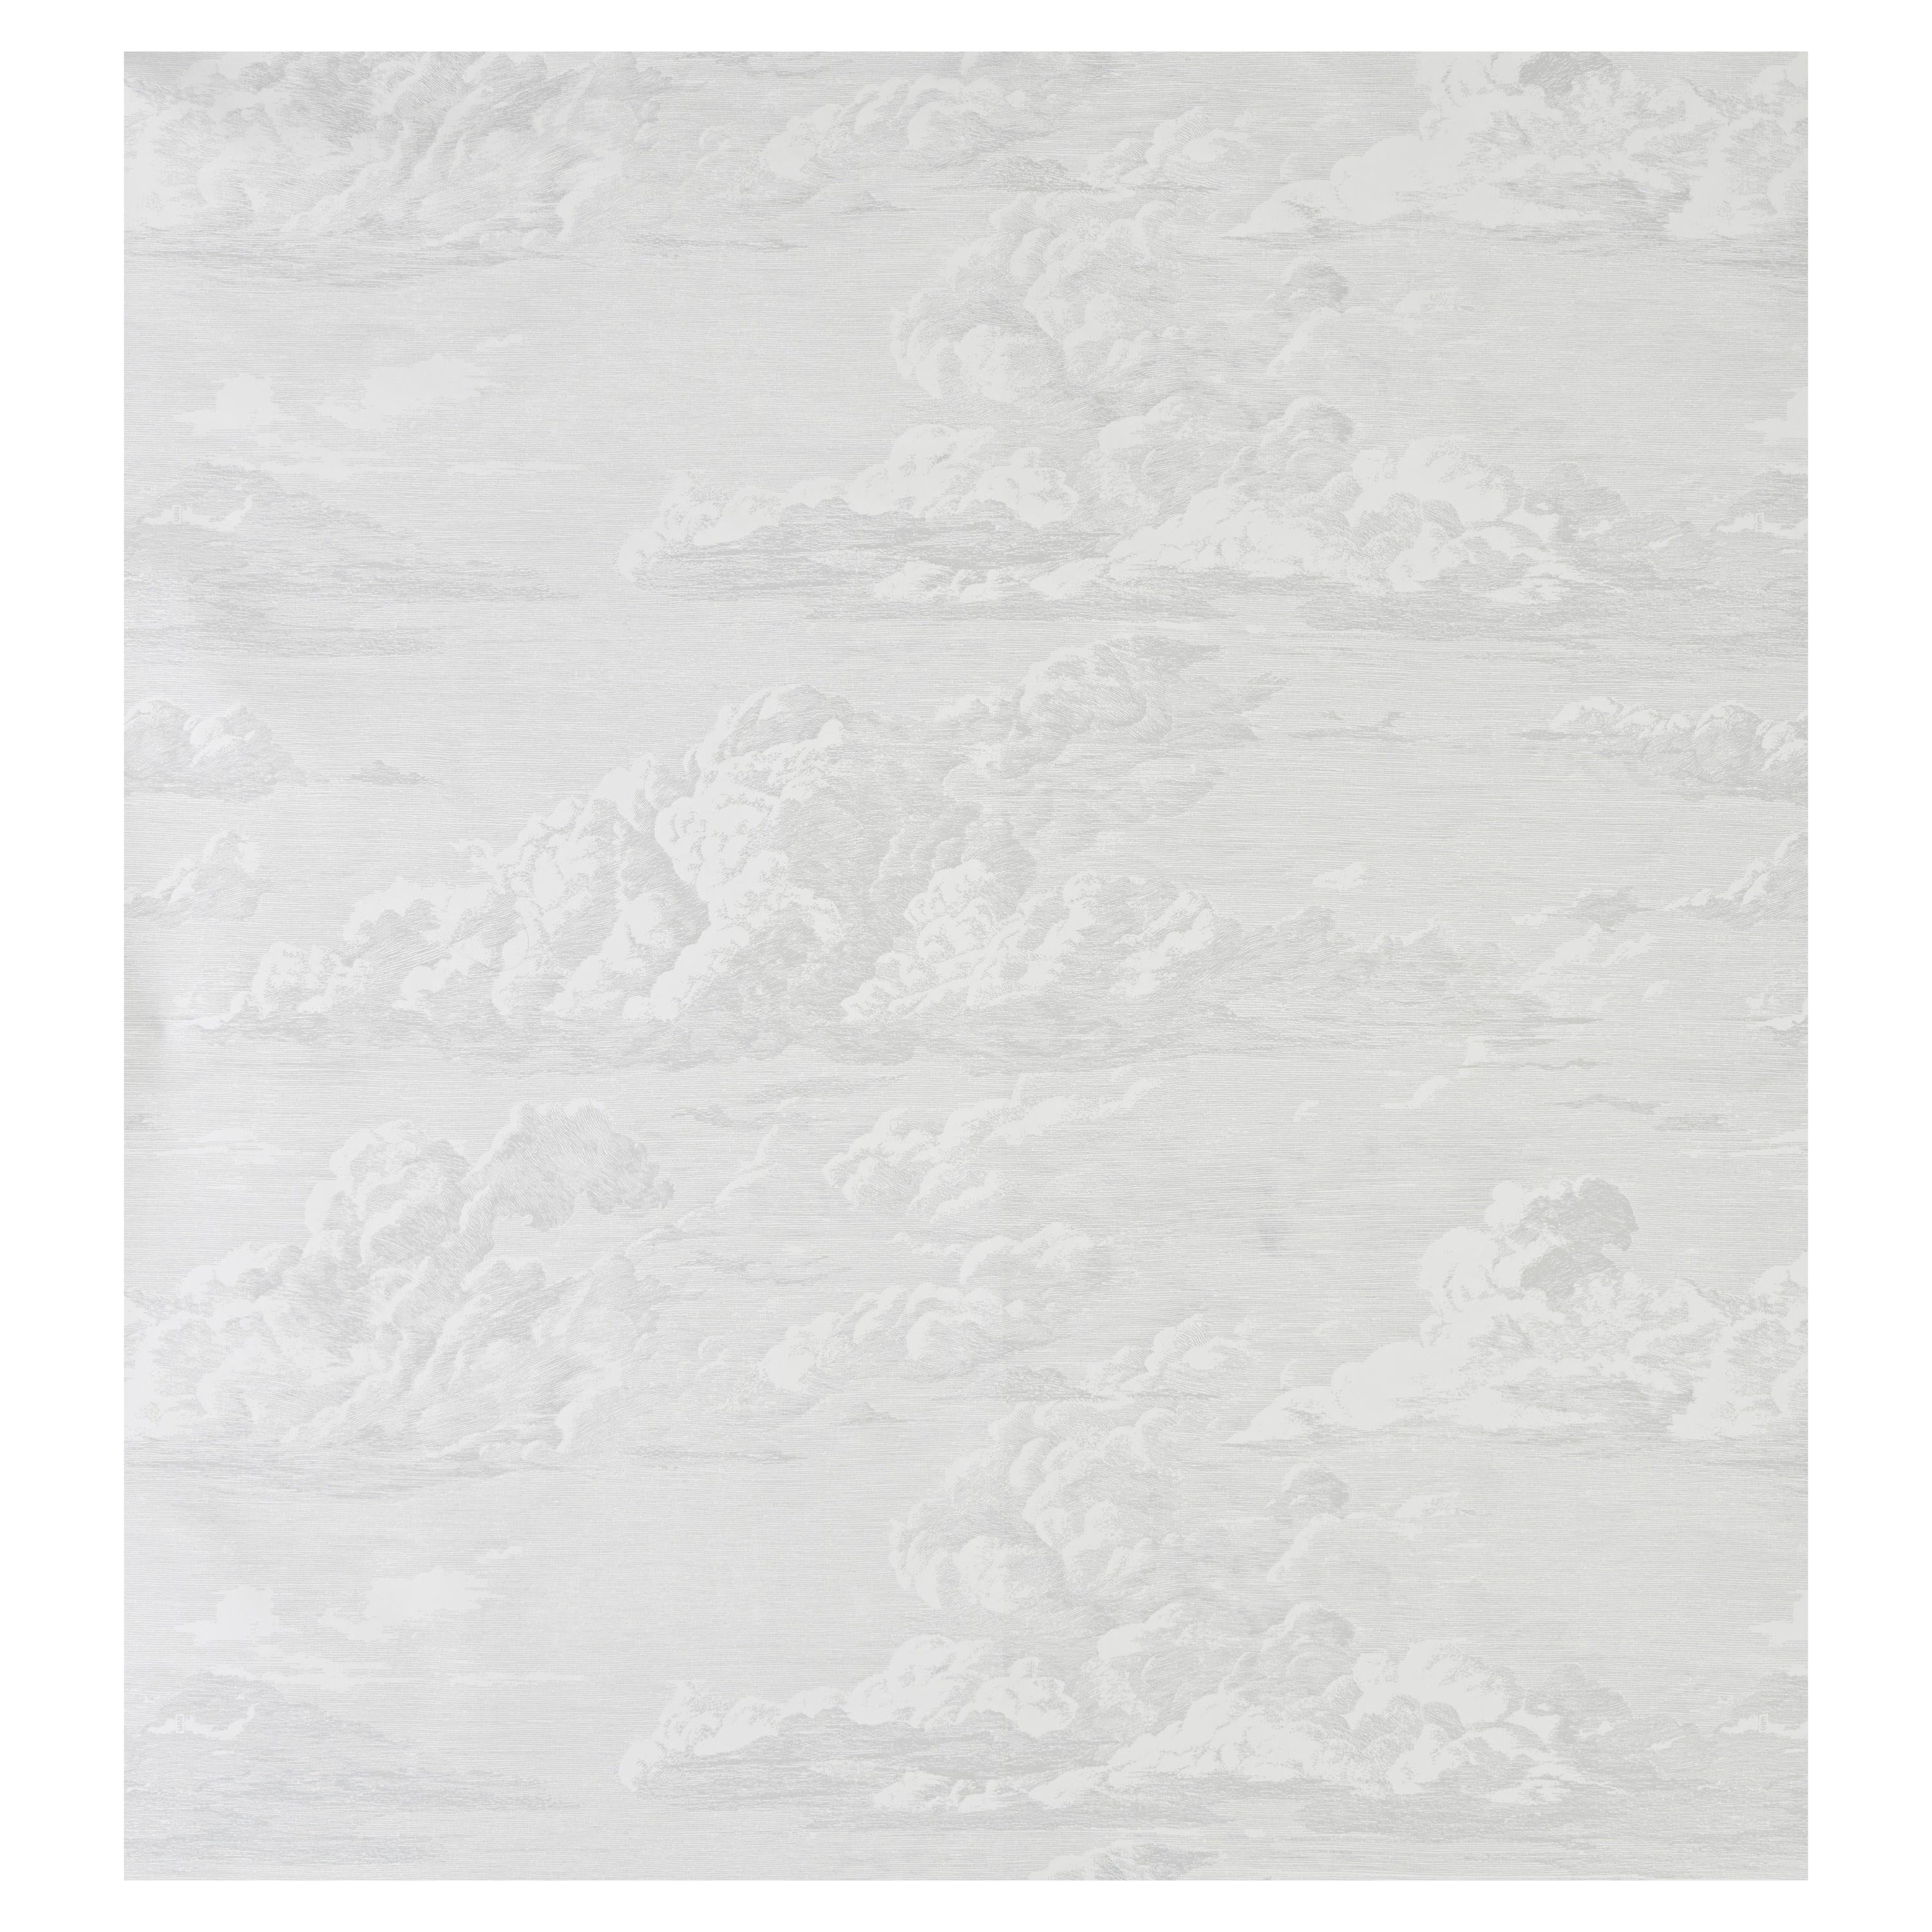 Schumacher Cloud Toile Wallpaper in Quartz For Sale